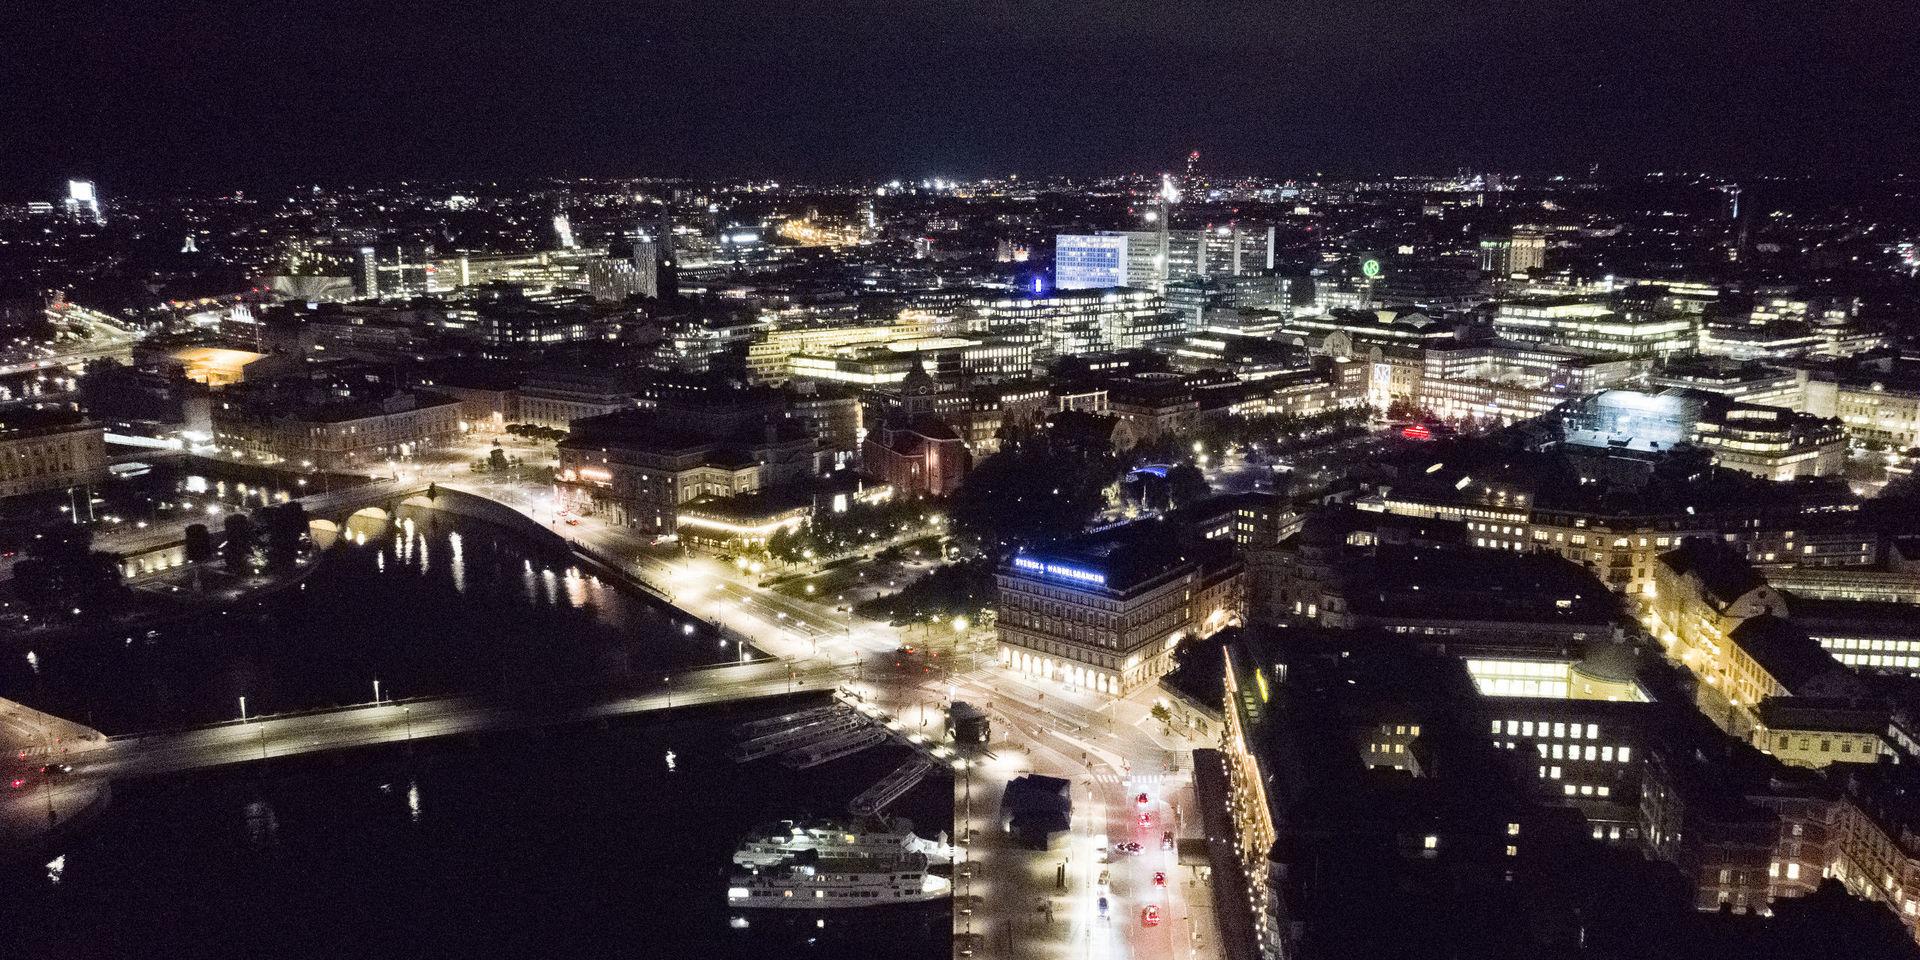 Städers nattbelysning hjälper forskare att beräkna hur mycket energi som används i olika regioner, och vilken uppvärmning detta leder till. Här ses Stockholms city, med Strömkajen och Grand Hotel i förgrunden. Arkivbild.